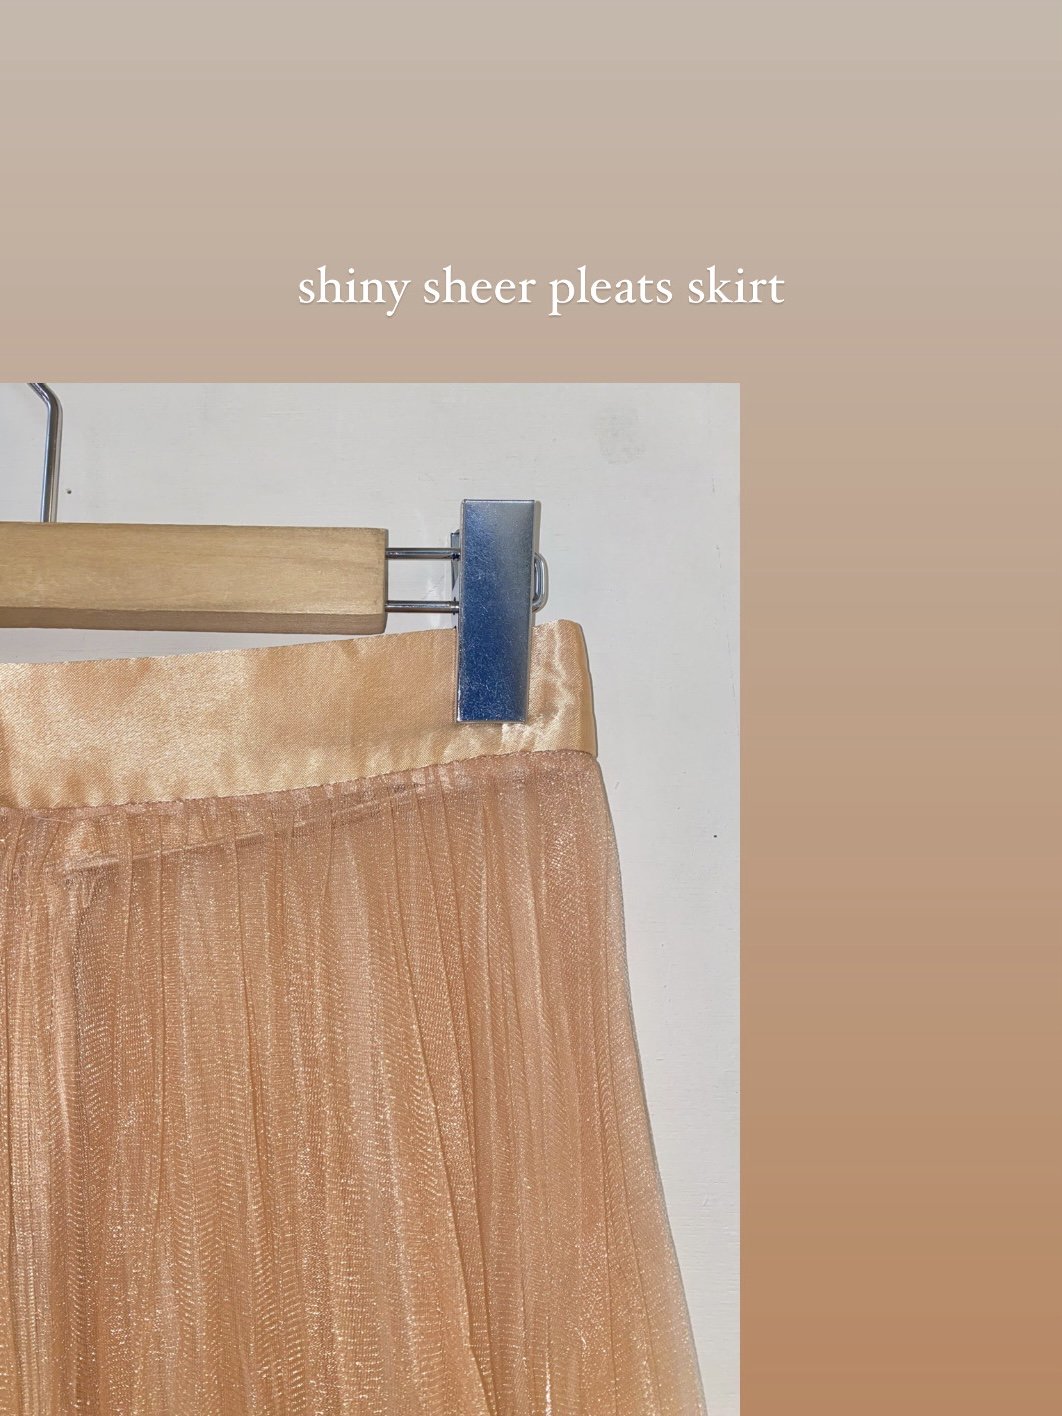 shiny sheer pleats skirt